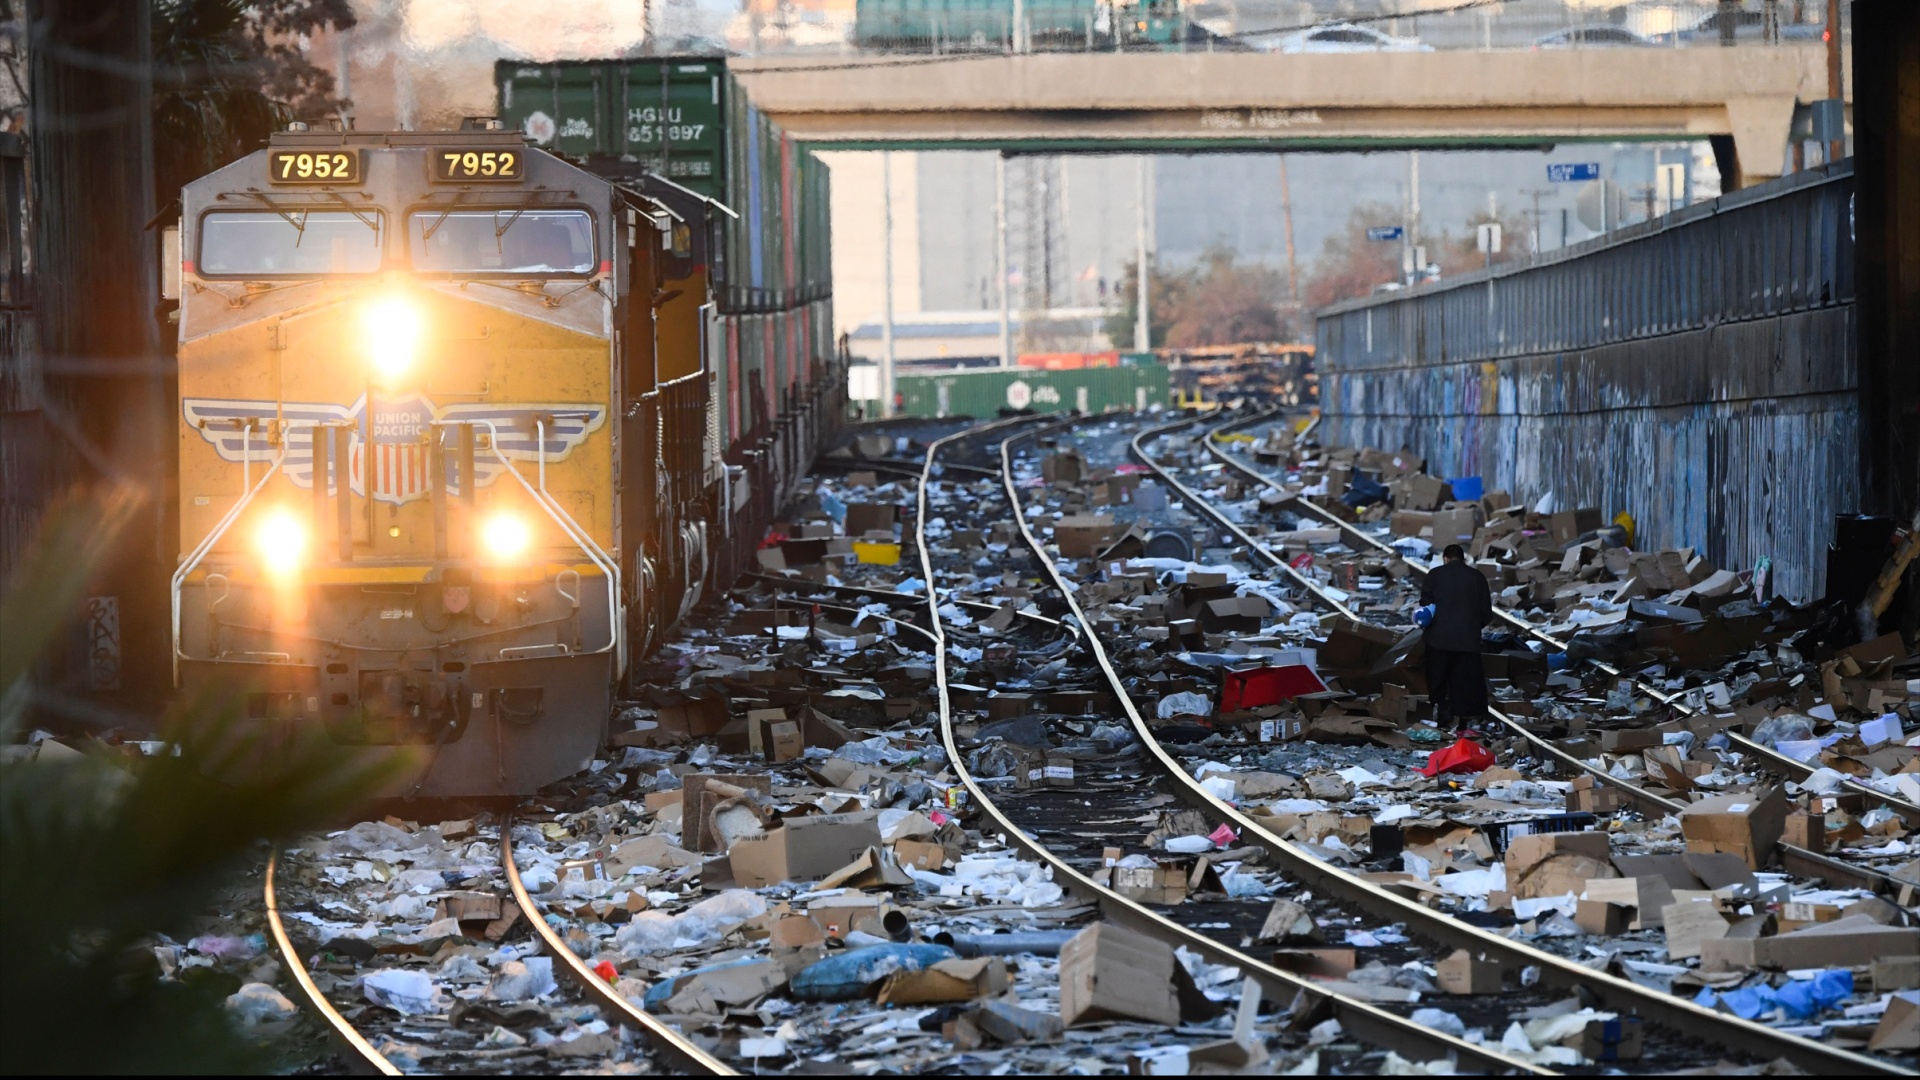 «Похоже на страну третьего мира»: как в США мародёры грабят поезда